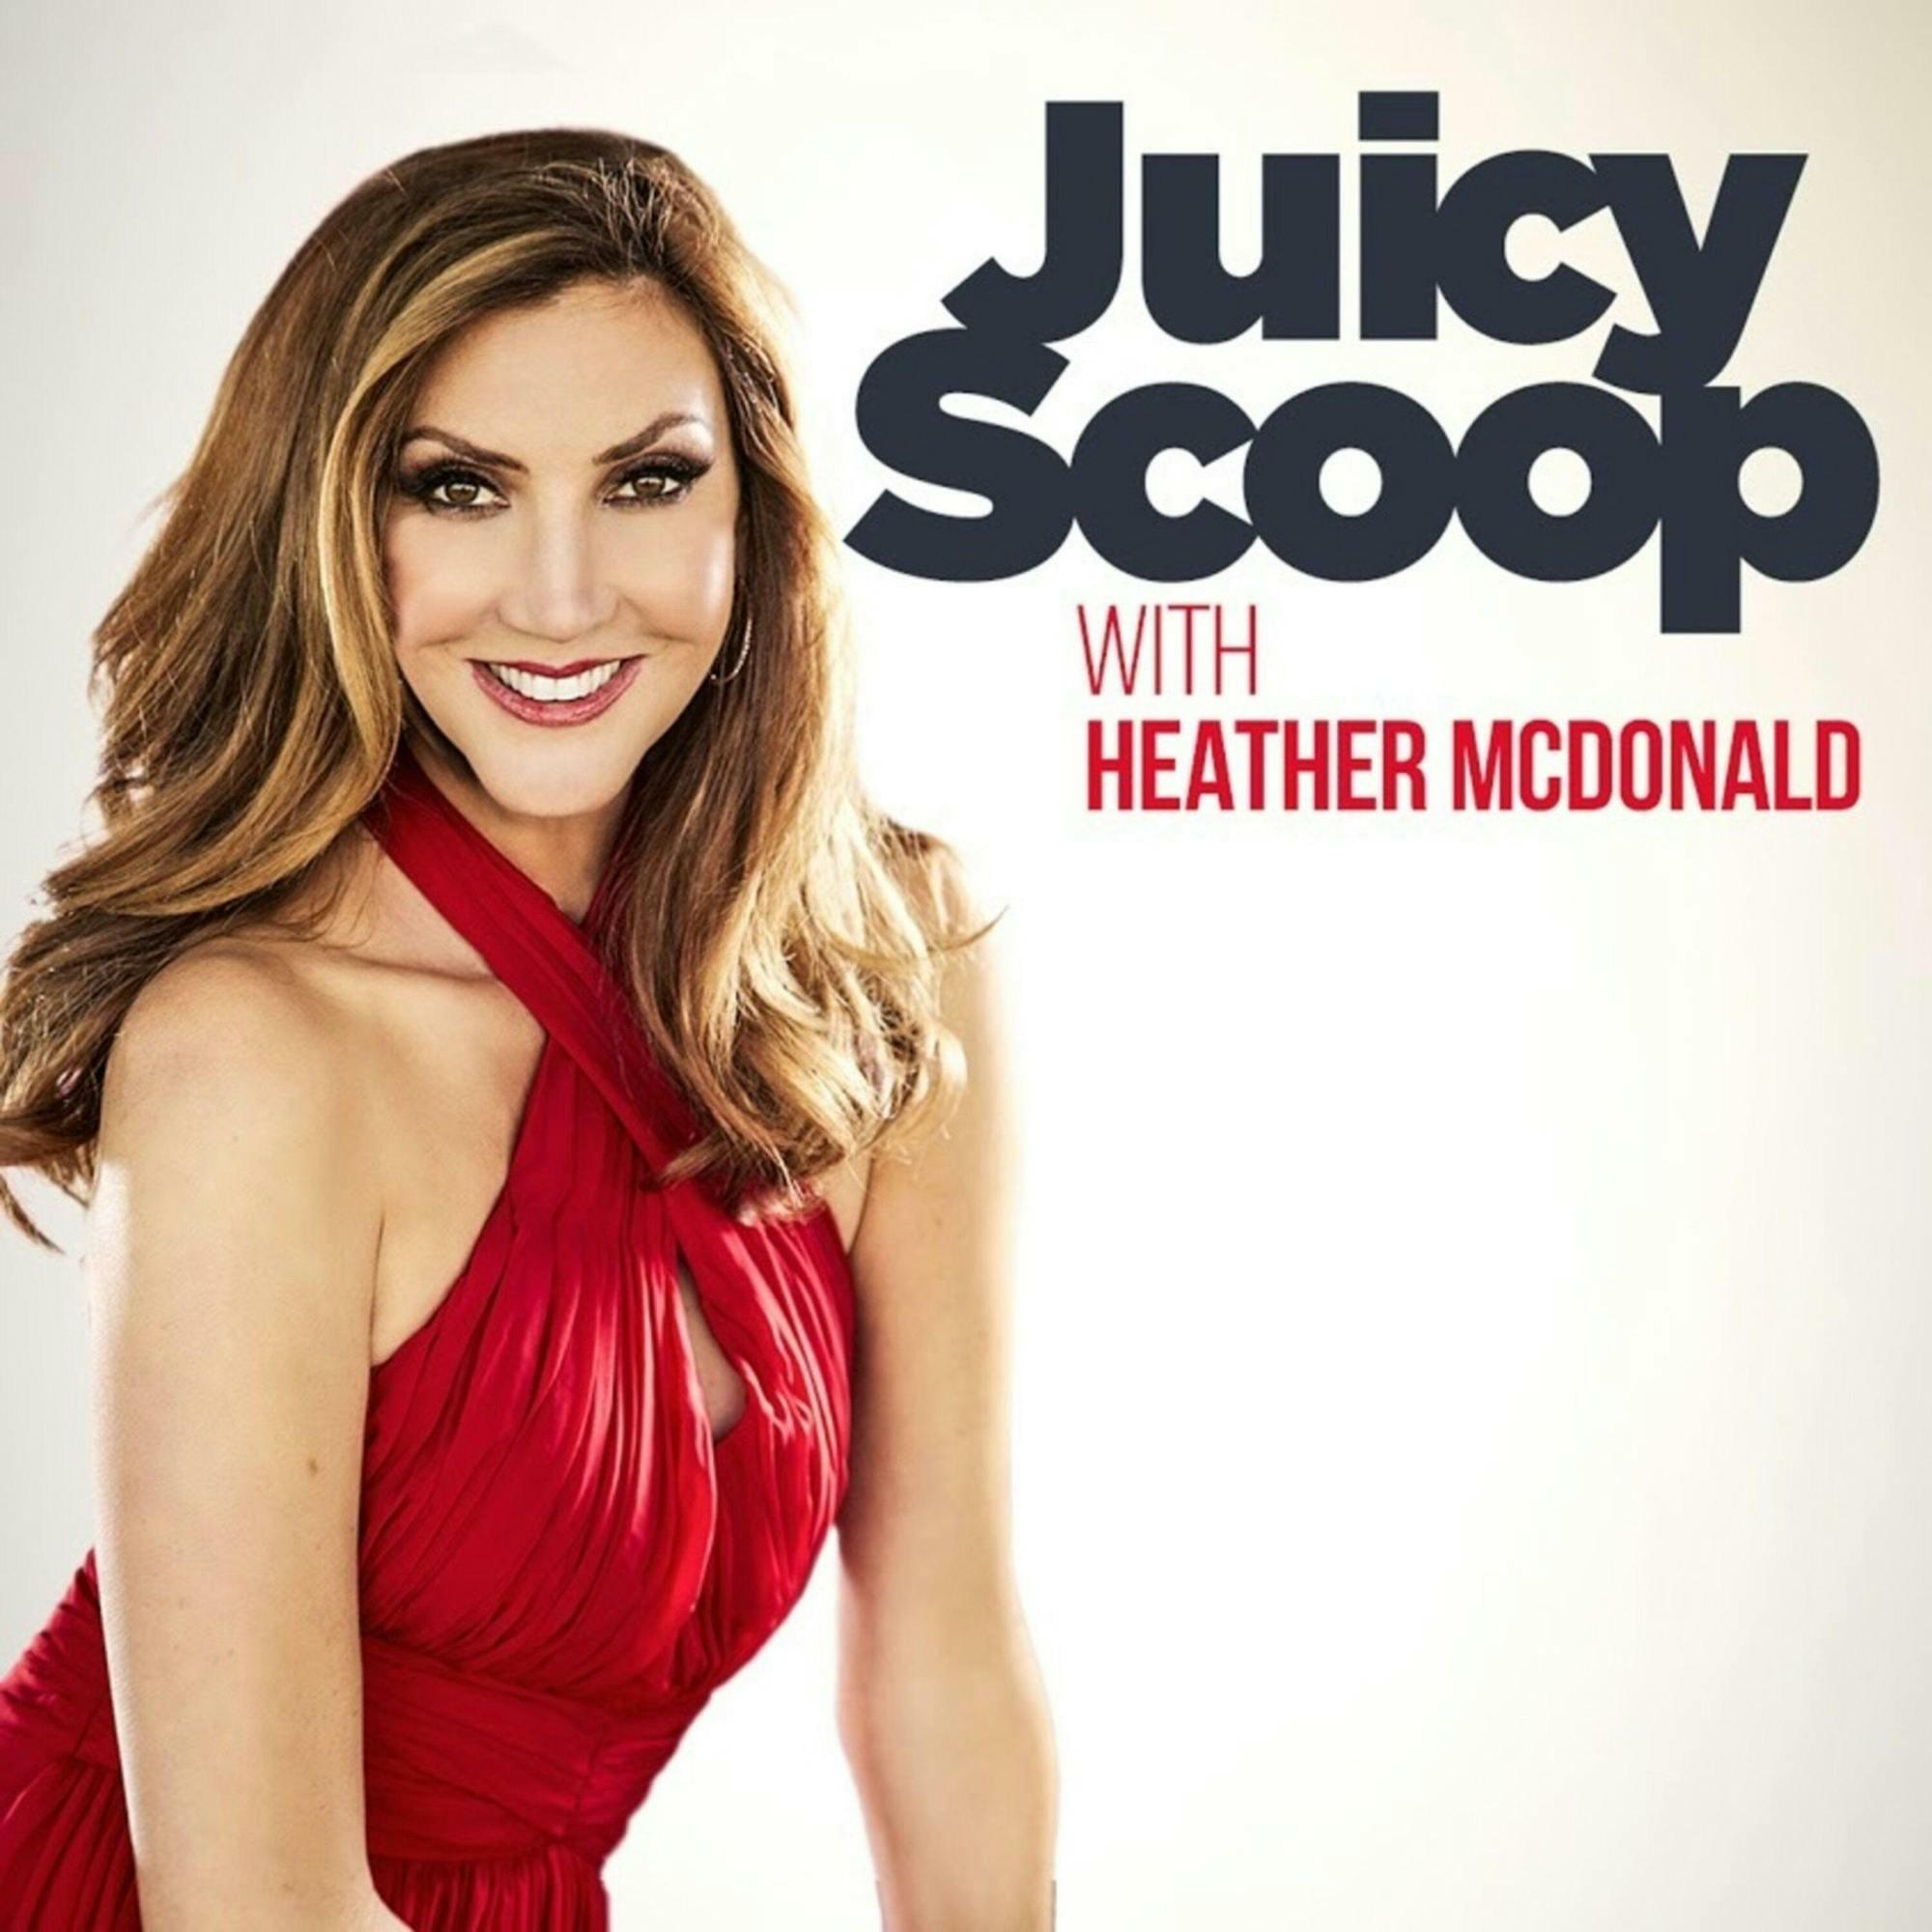 Juicy Scoop with Heather McDonald iHeart